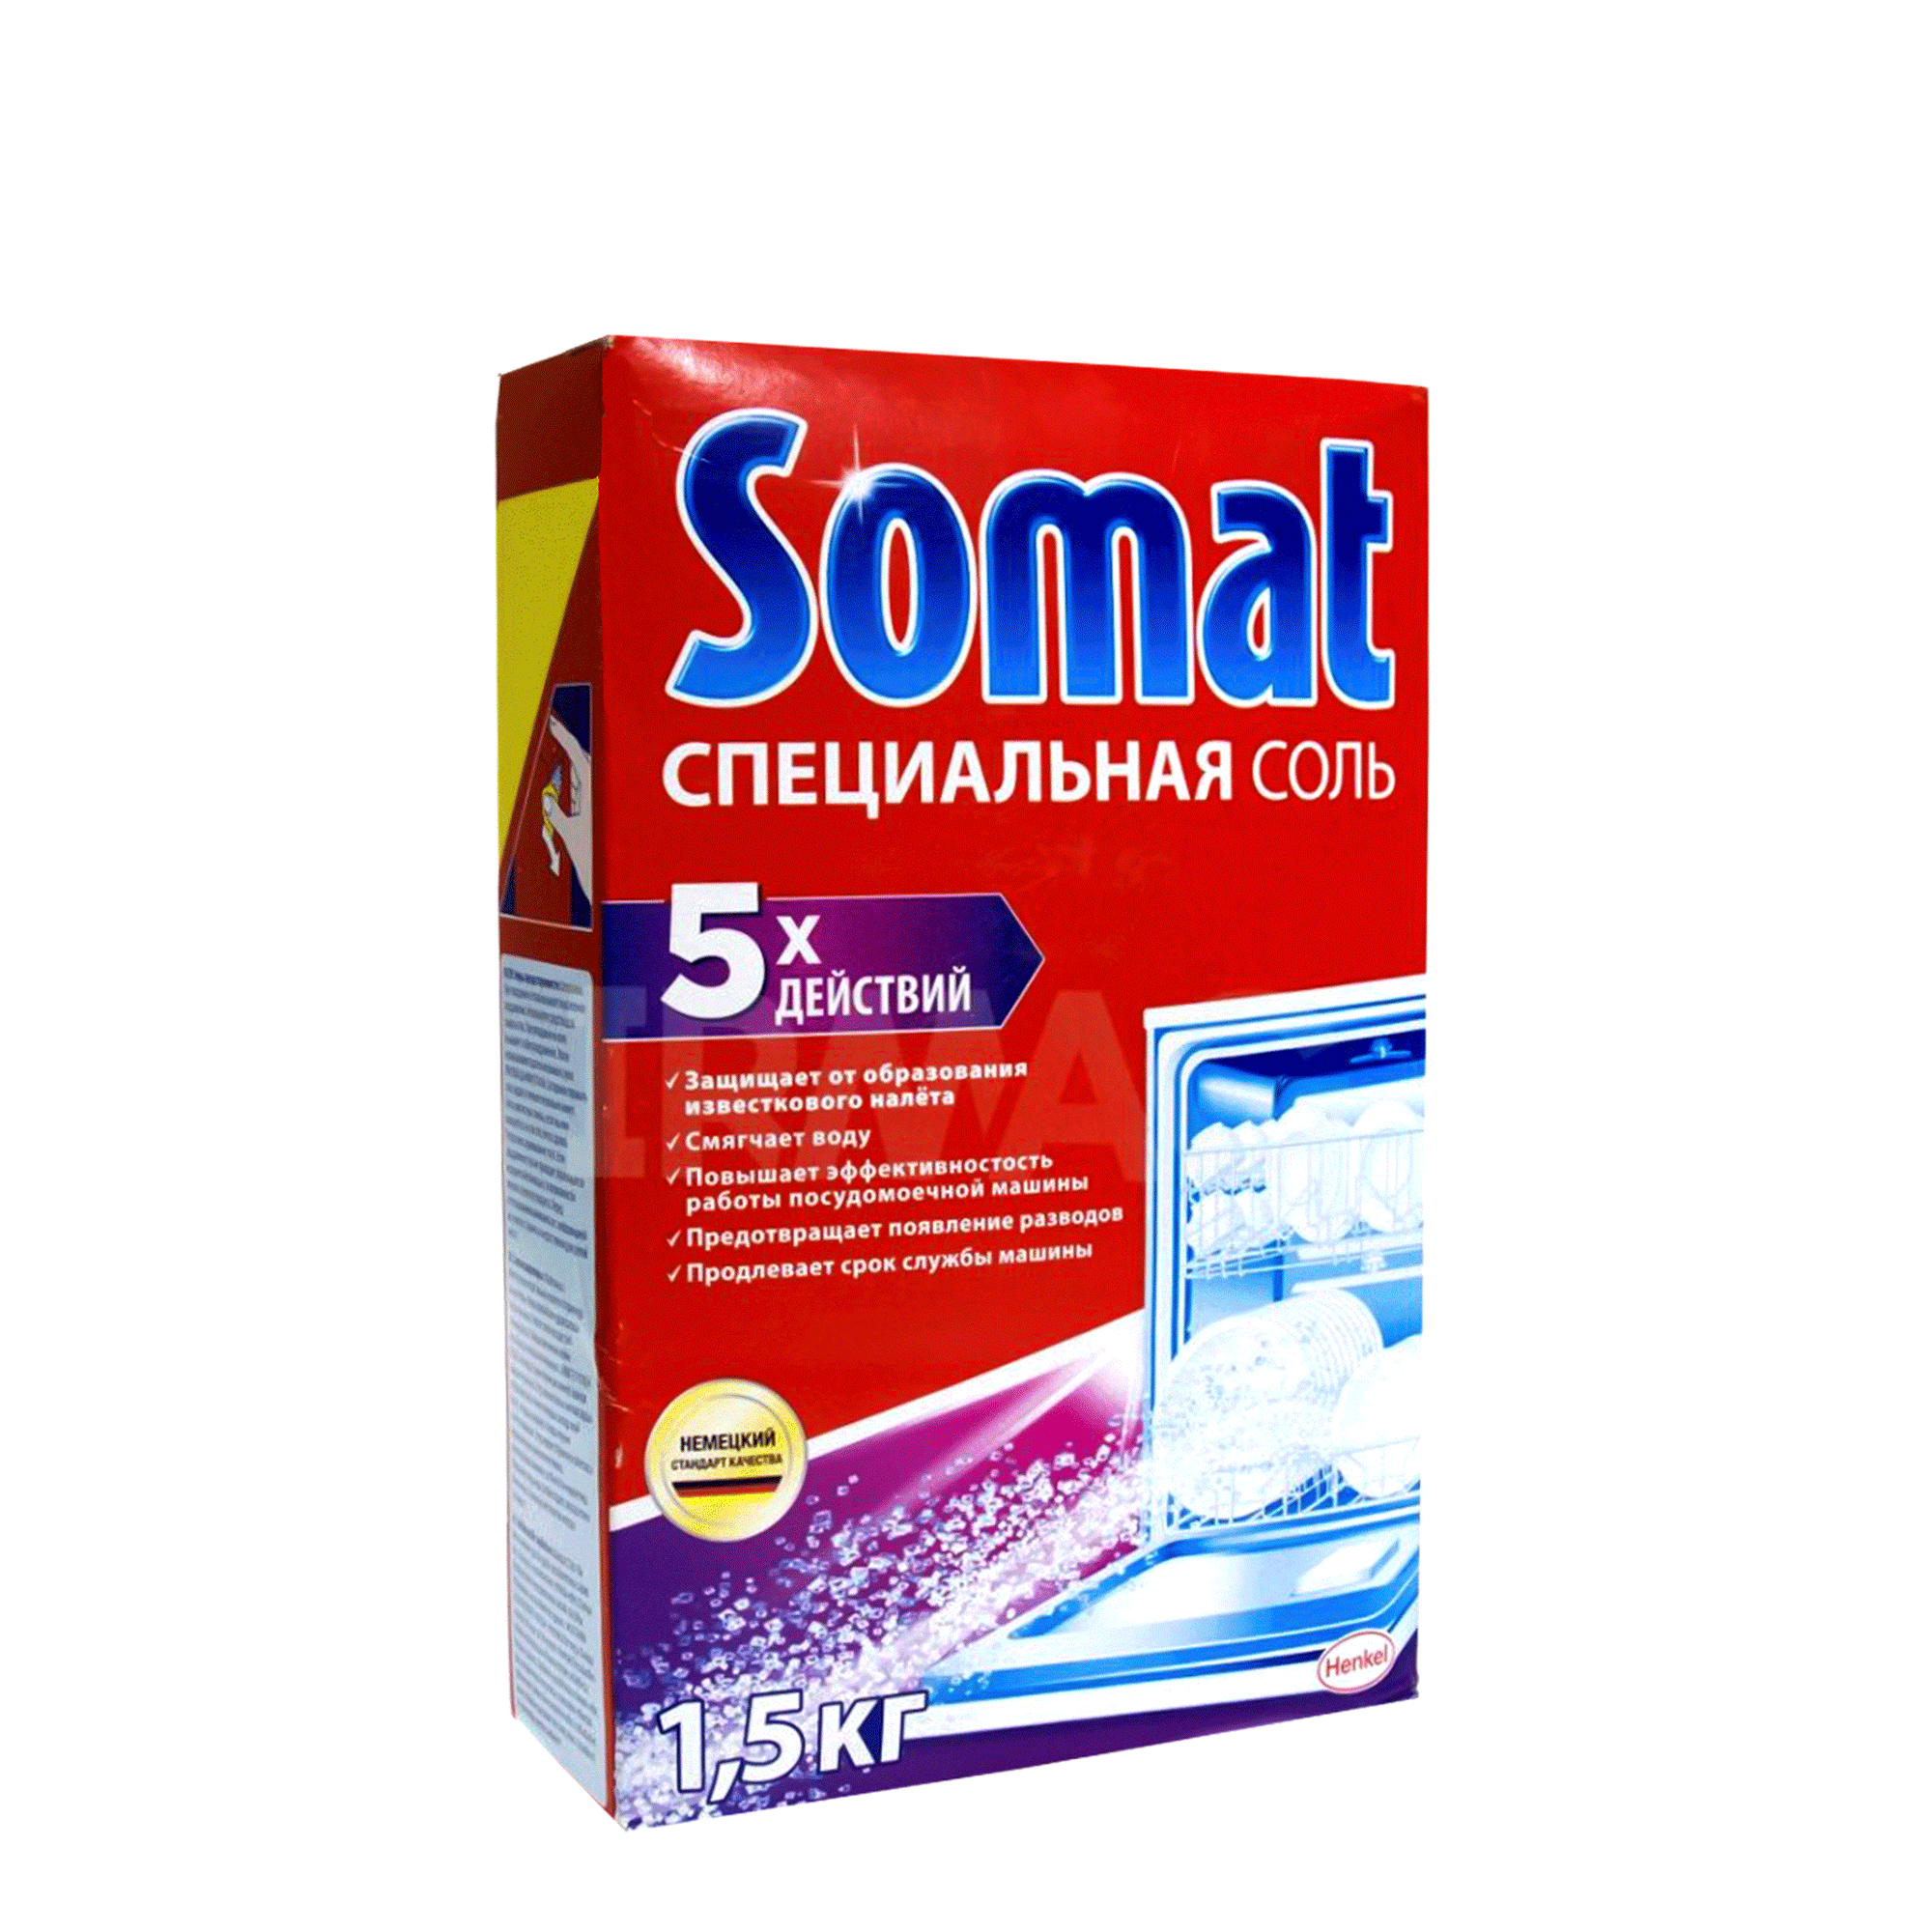 Աղ սպասք լվացող մեքենայի Somat 